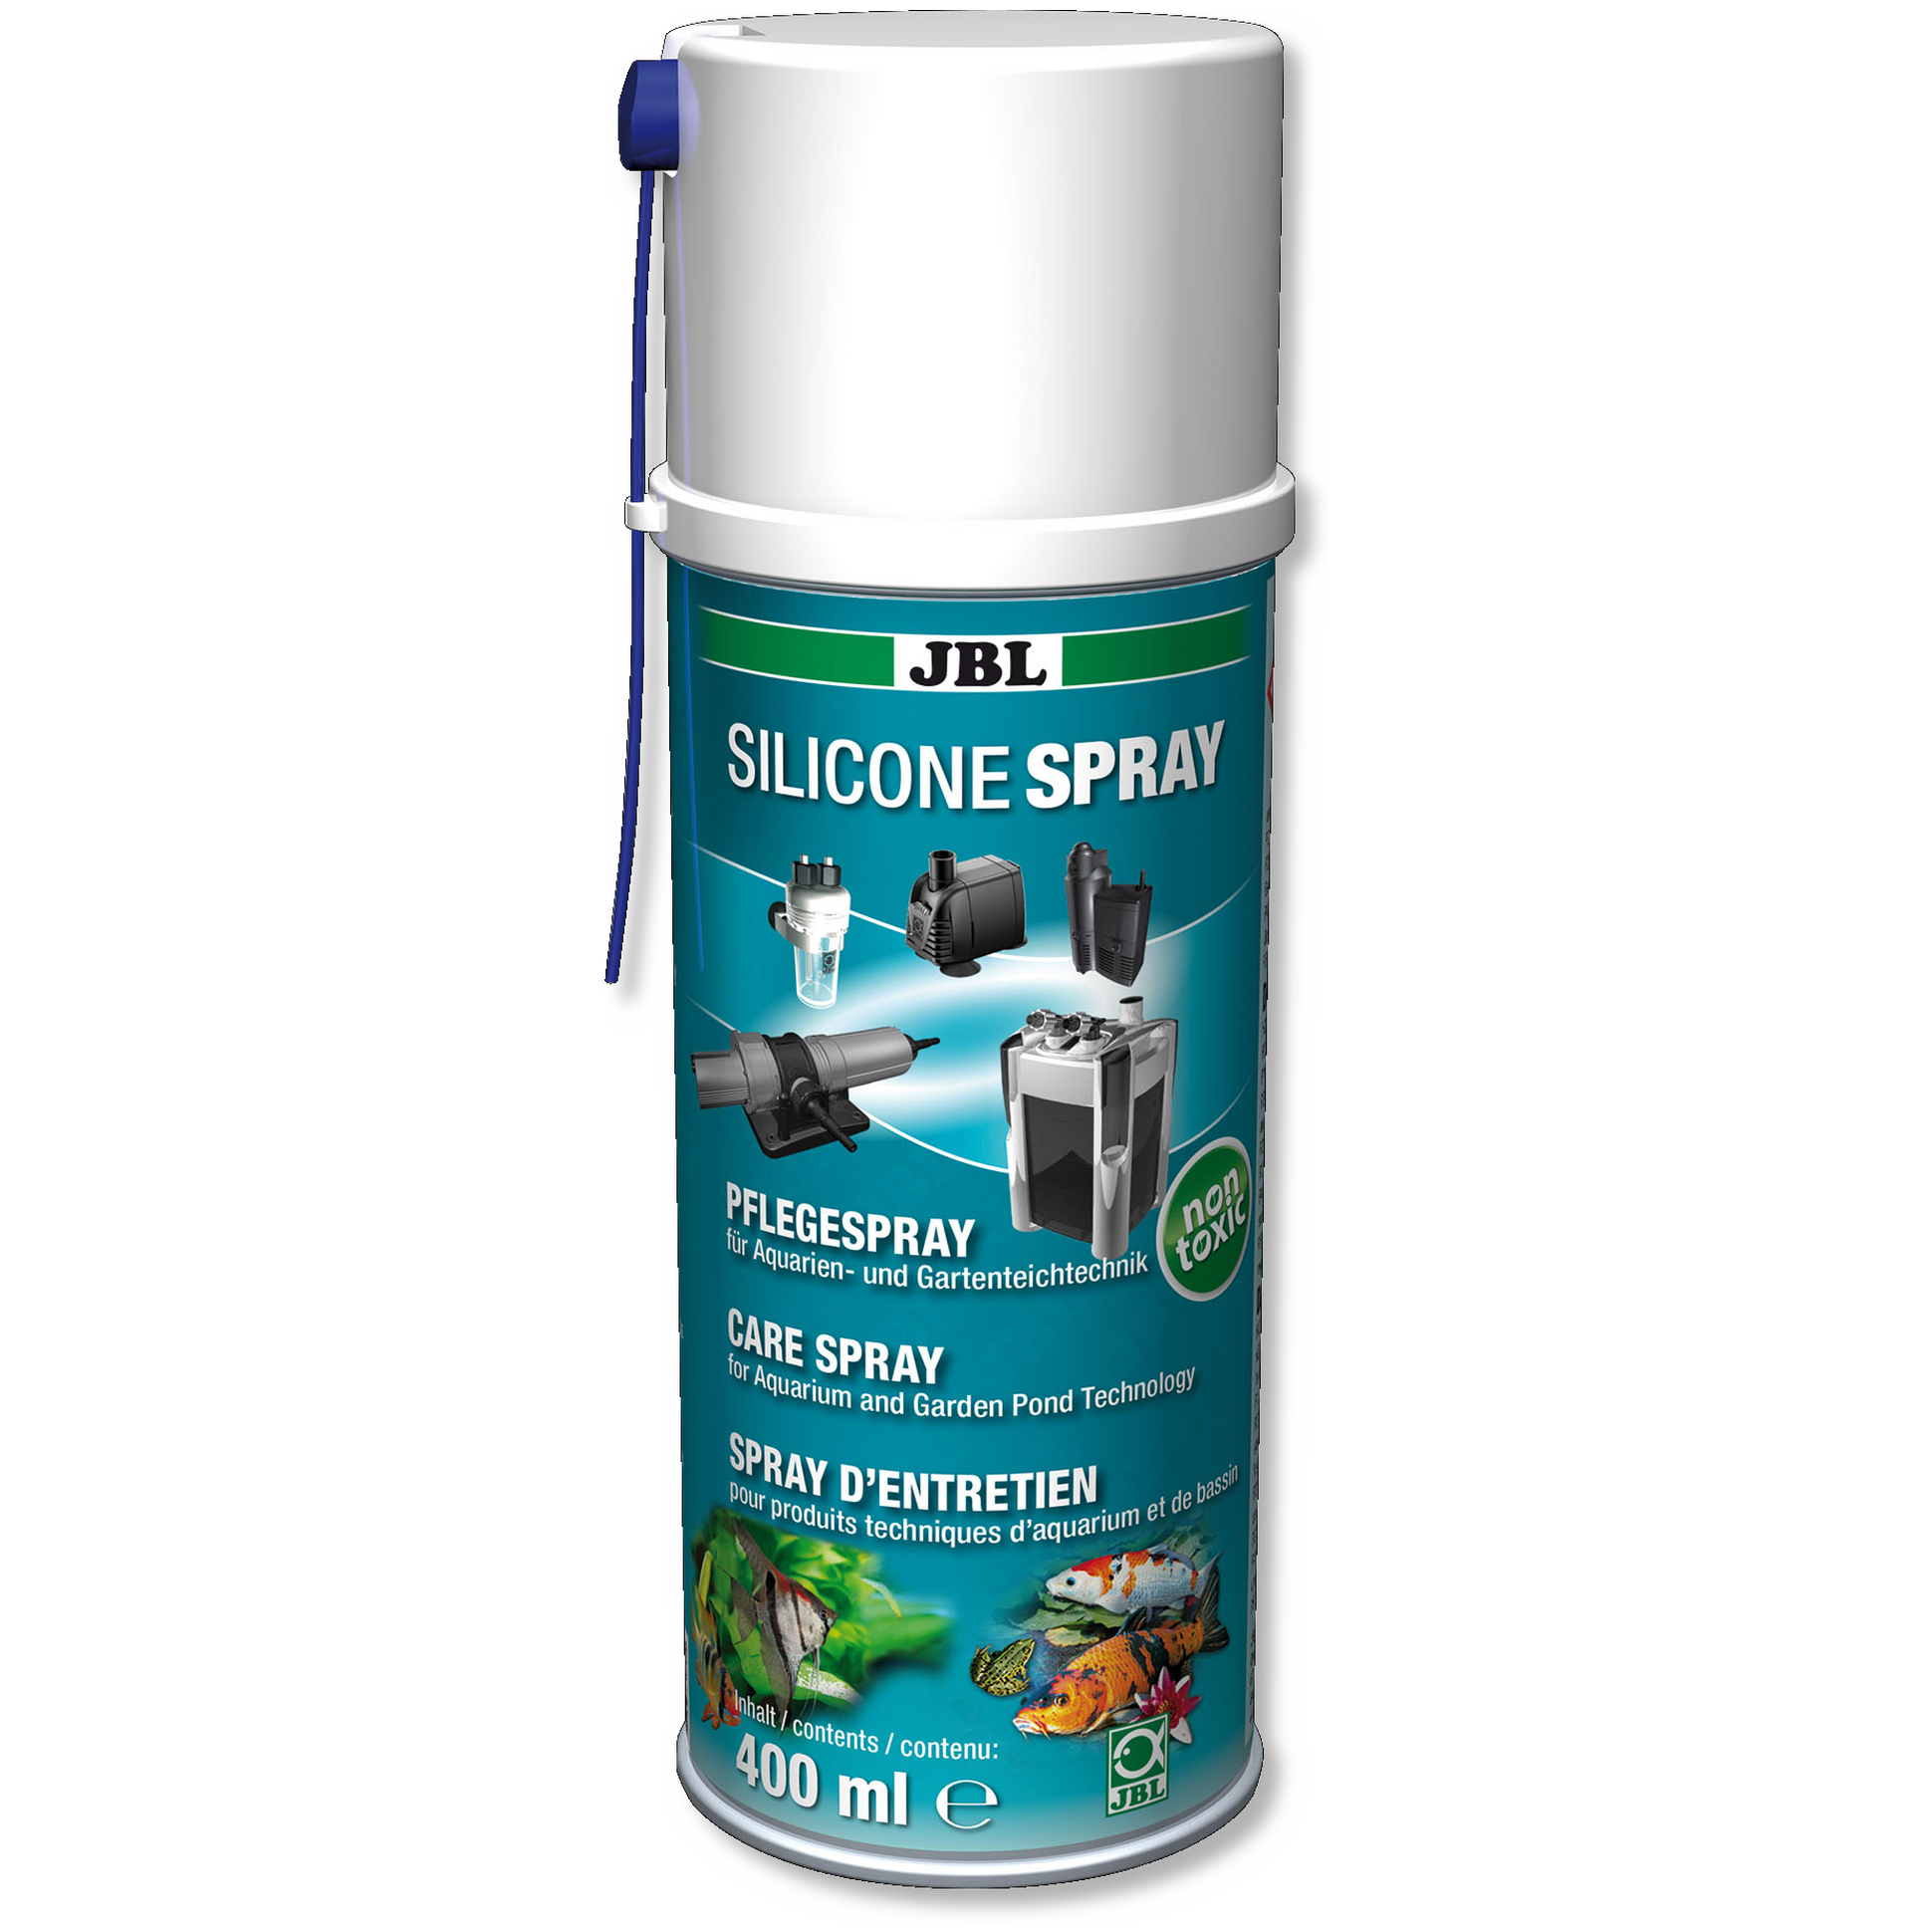 JBL SILICONE SPRAY Spray d'entretien pour technique d'aquarium et bassin